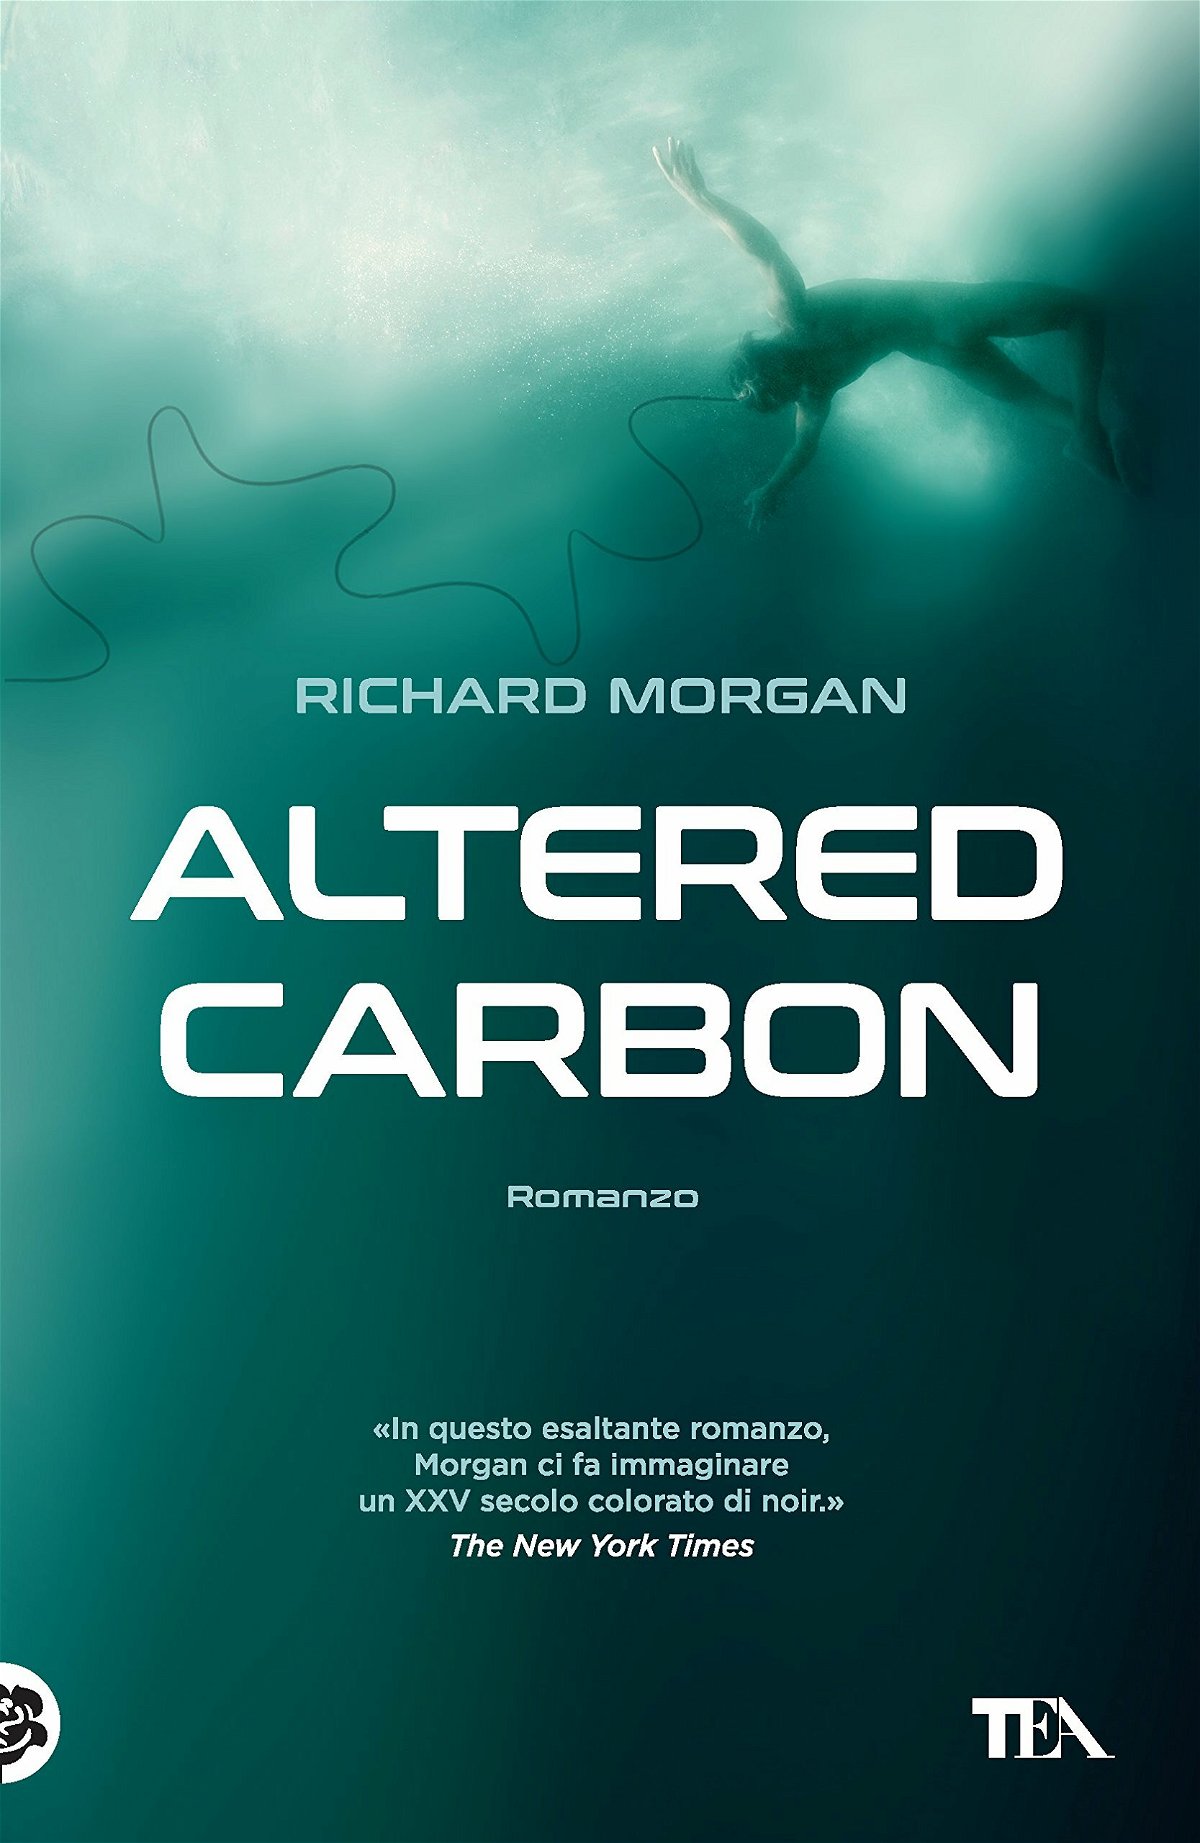 La copertina italiana della nuova edizione di Altered Carbon